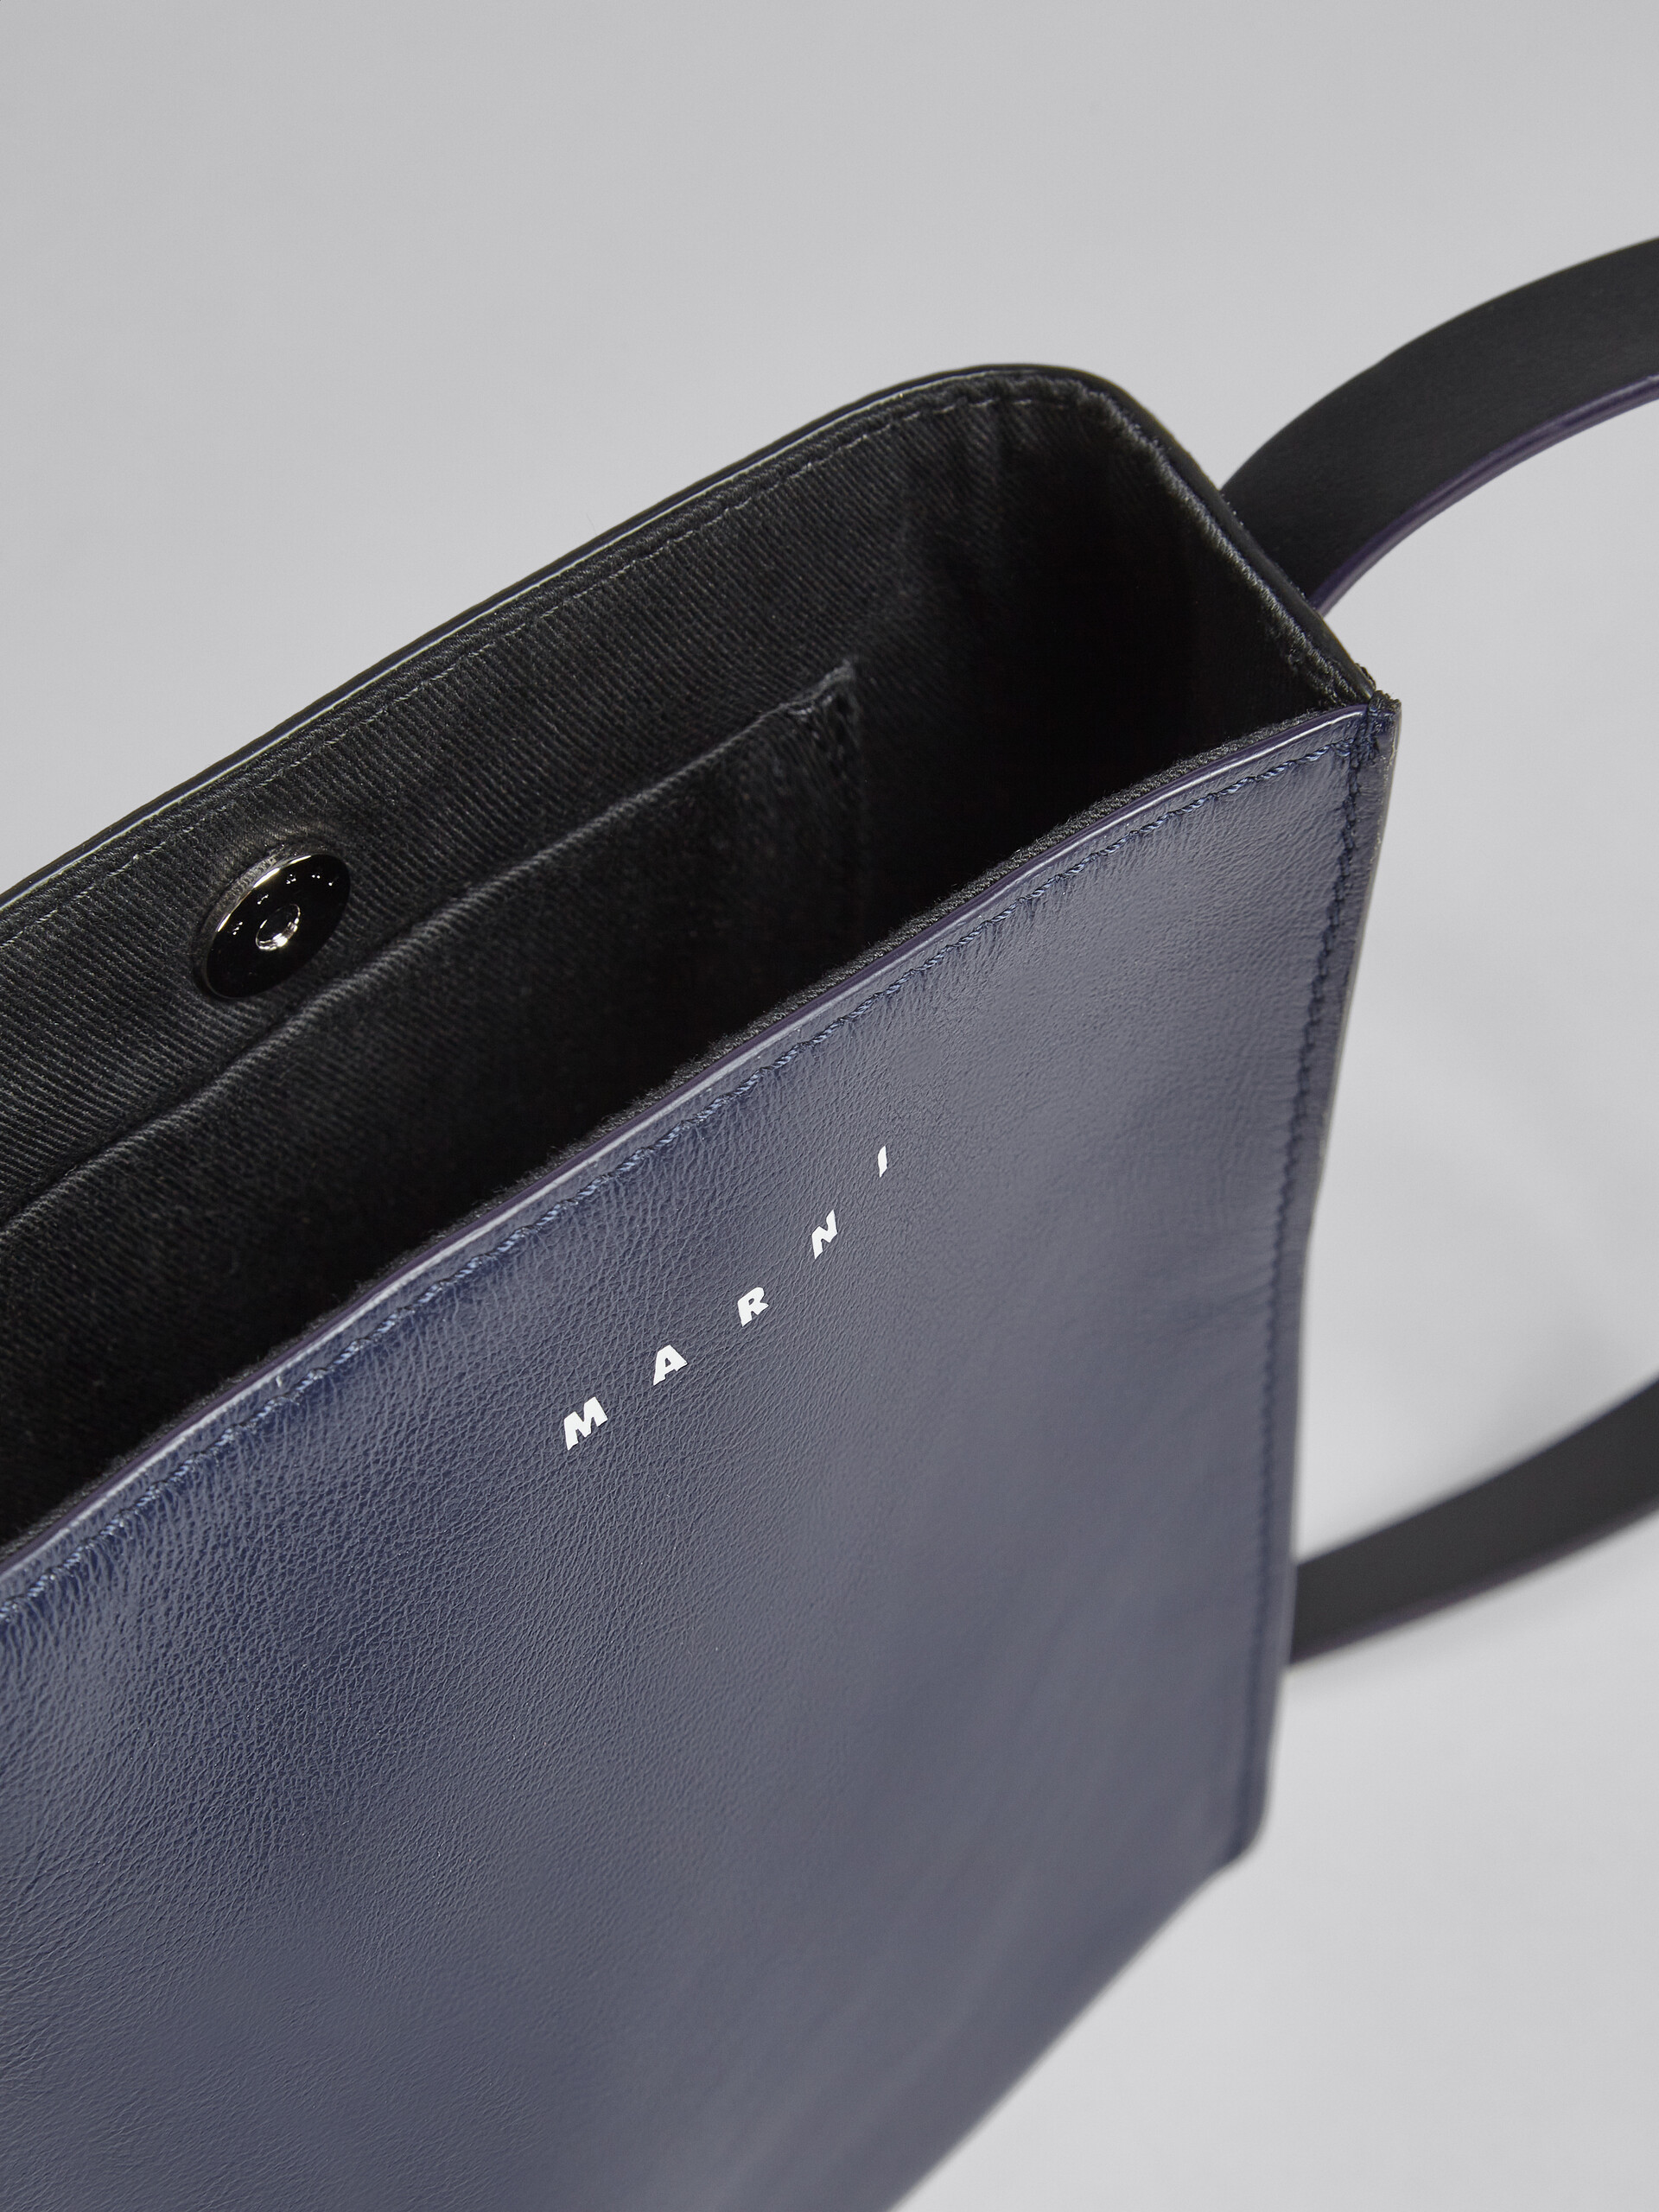 MUSEO SOFT bag piccola in pelle lucida blu e nera - Borse a spalla - Image 4